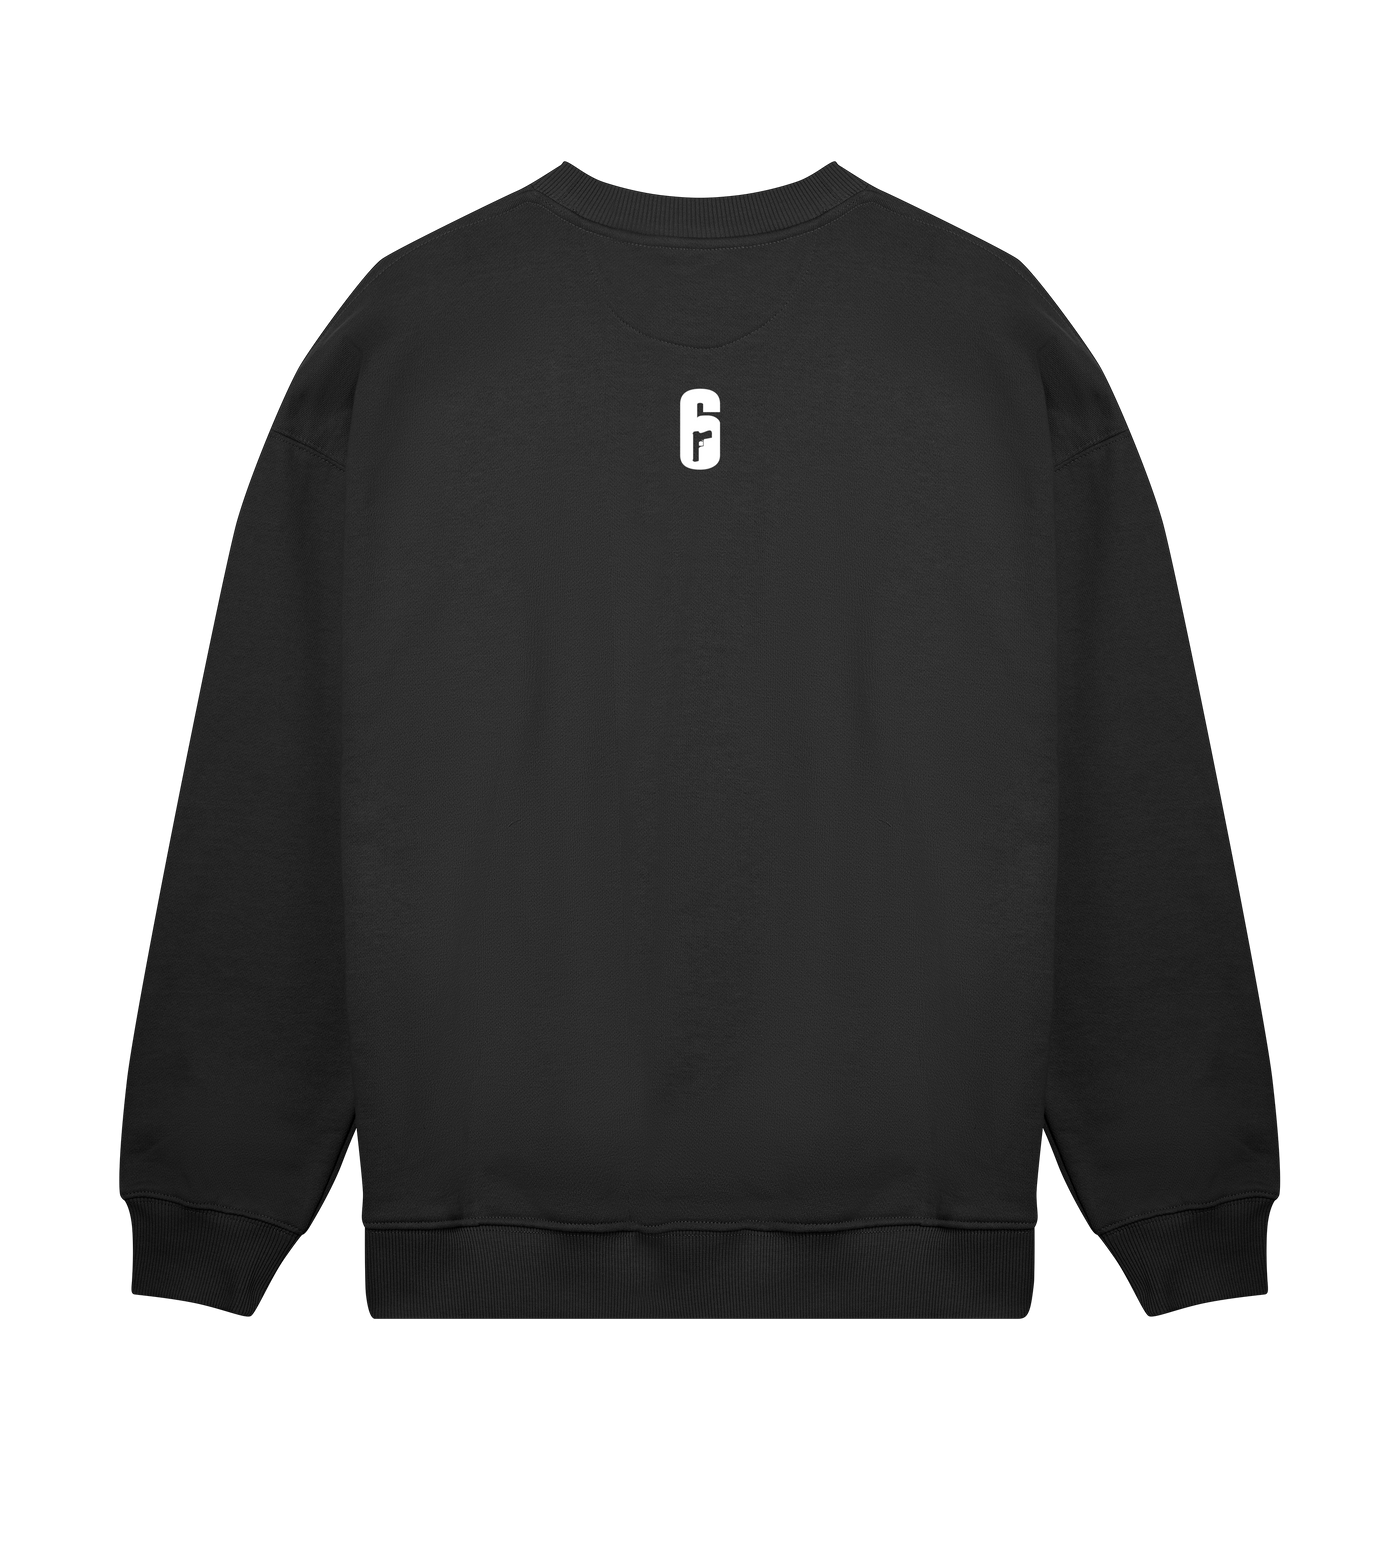 6 SIEGE - Redhammer Sweatshirt